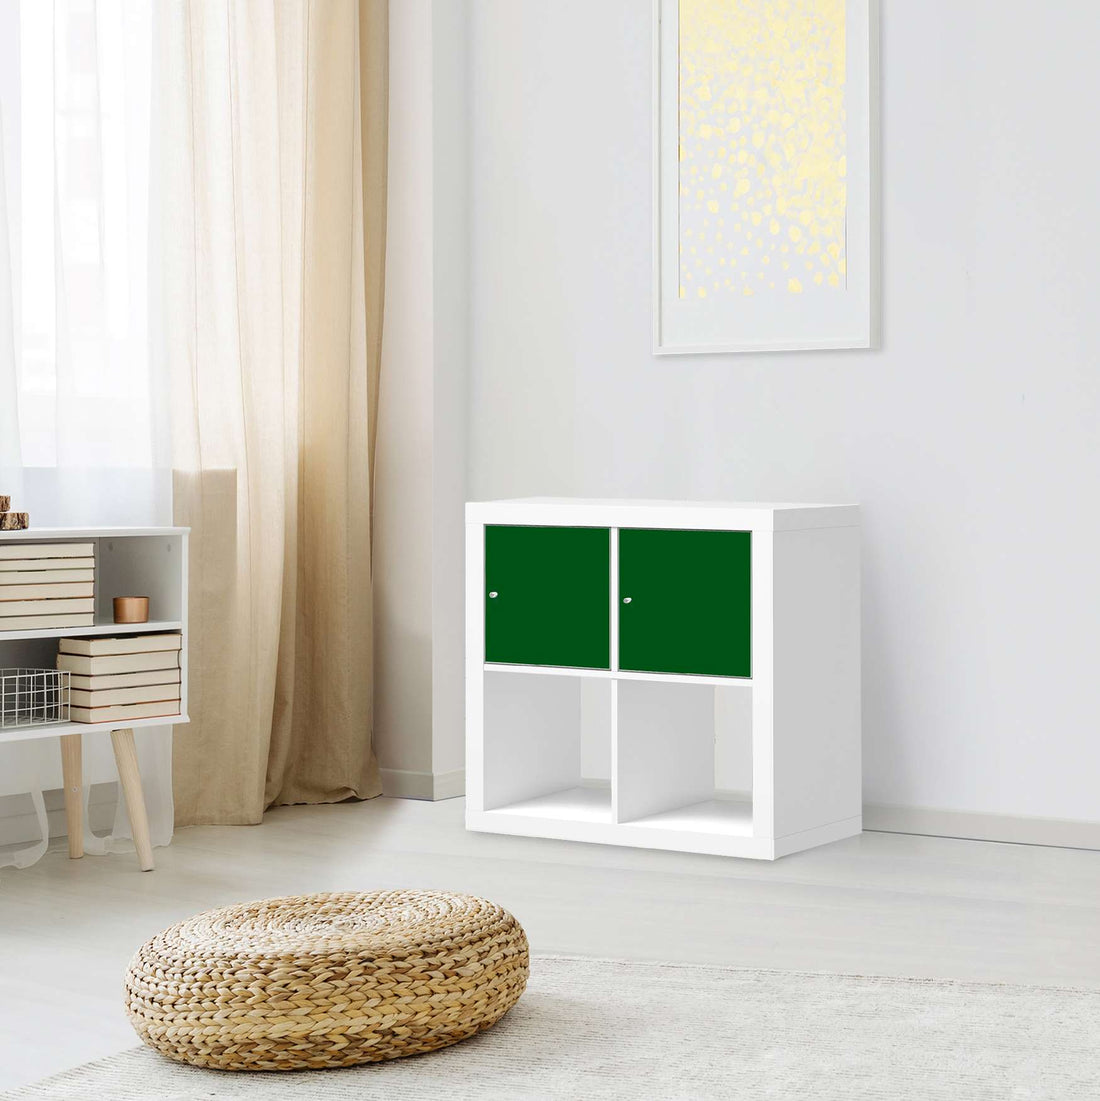 Möbel Klebefolie Grün Dark - IKEA Expedit Regal 2 Türen Quer - Wohnzimmer